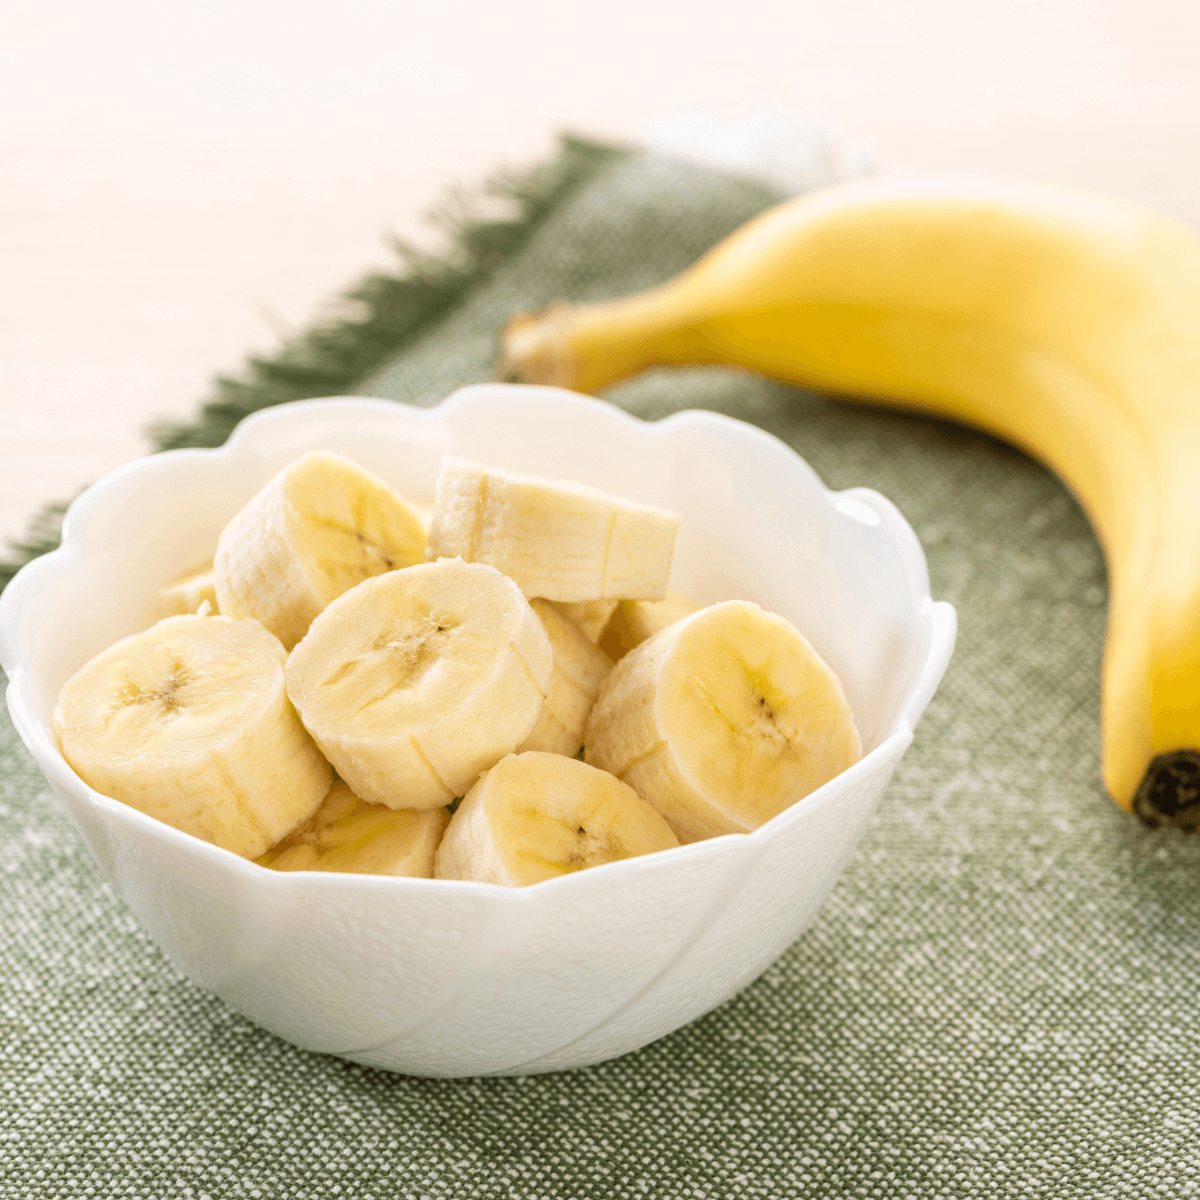 p&amp;G organic foods banana powder